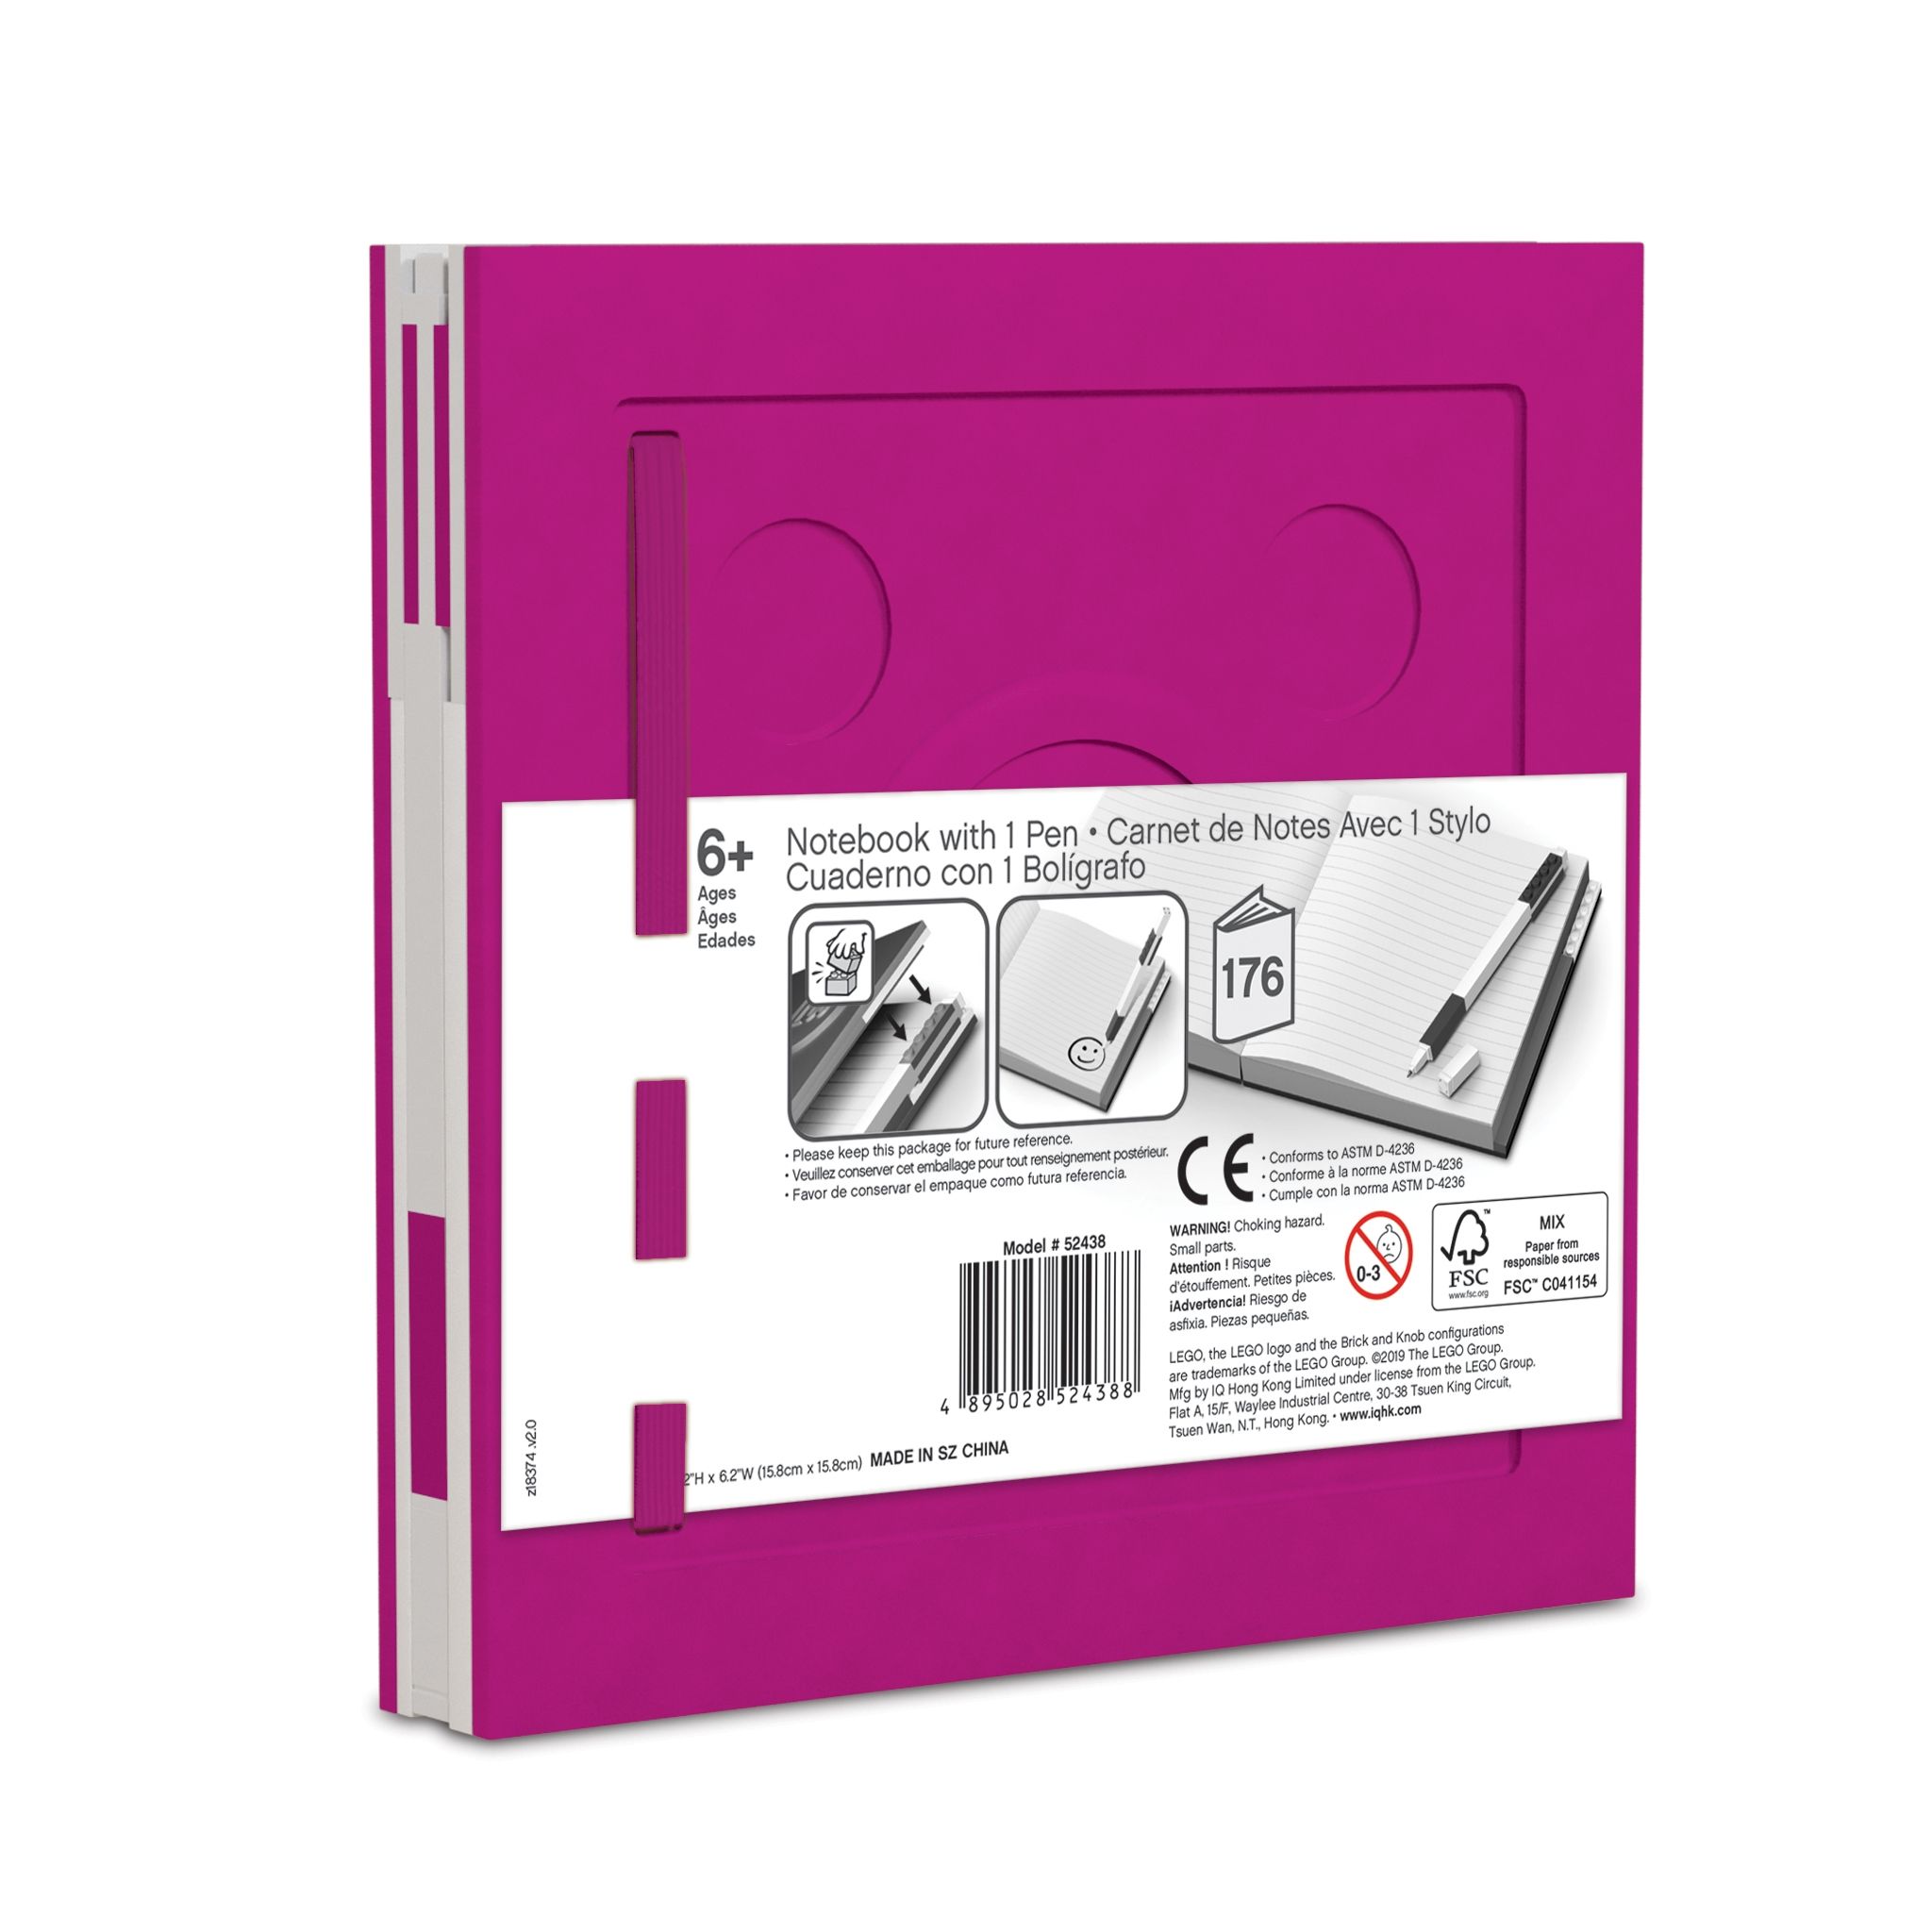 LEGO Gear 5007238 Verschließbares Notizbuch mit Gelschreiber in Violett LEGO_5007238_alt2.jpg